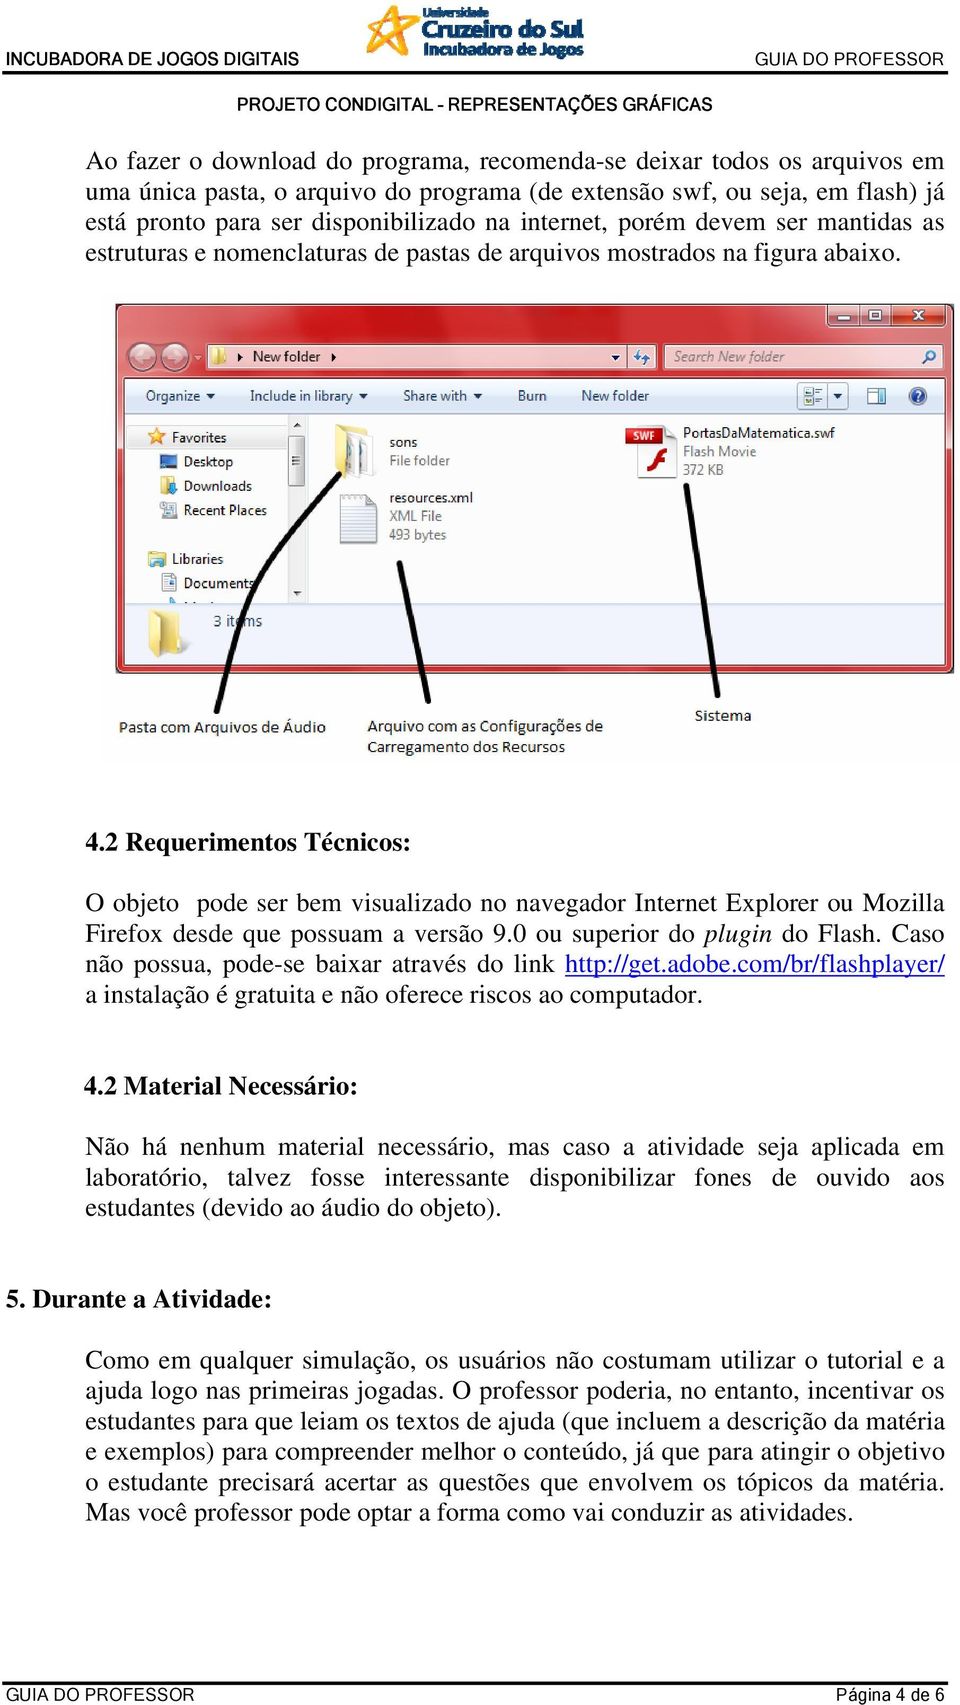 2 Requerimentos Técnicos: O objeto pode ser bem visualizado no navegador Internet Explorer ou Mozilla Firefox desde que possuam a versão 9.0 ou superior do plugin do Flash.